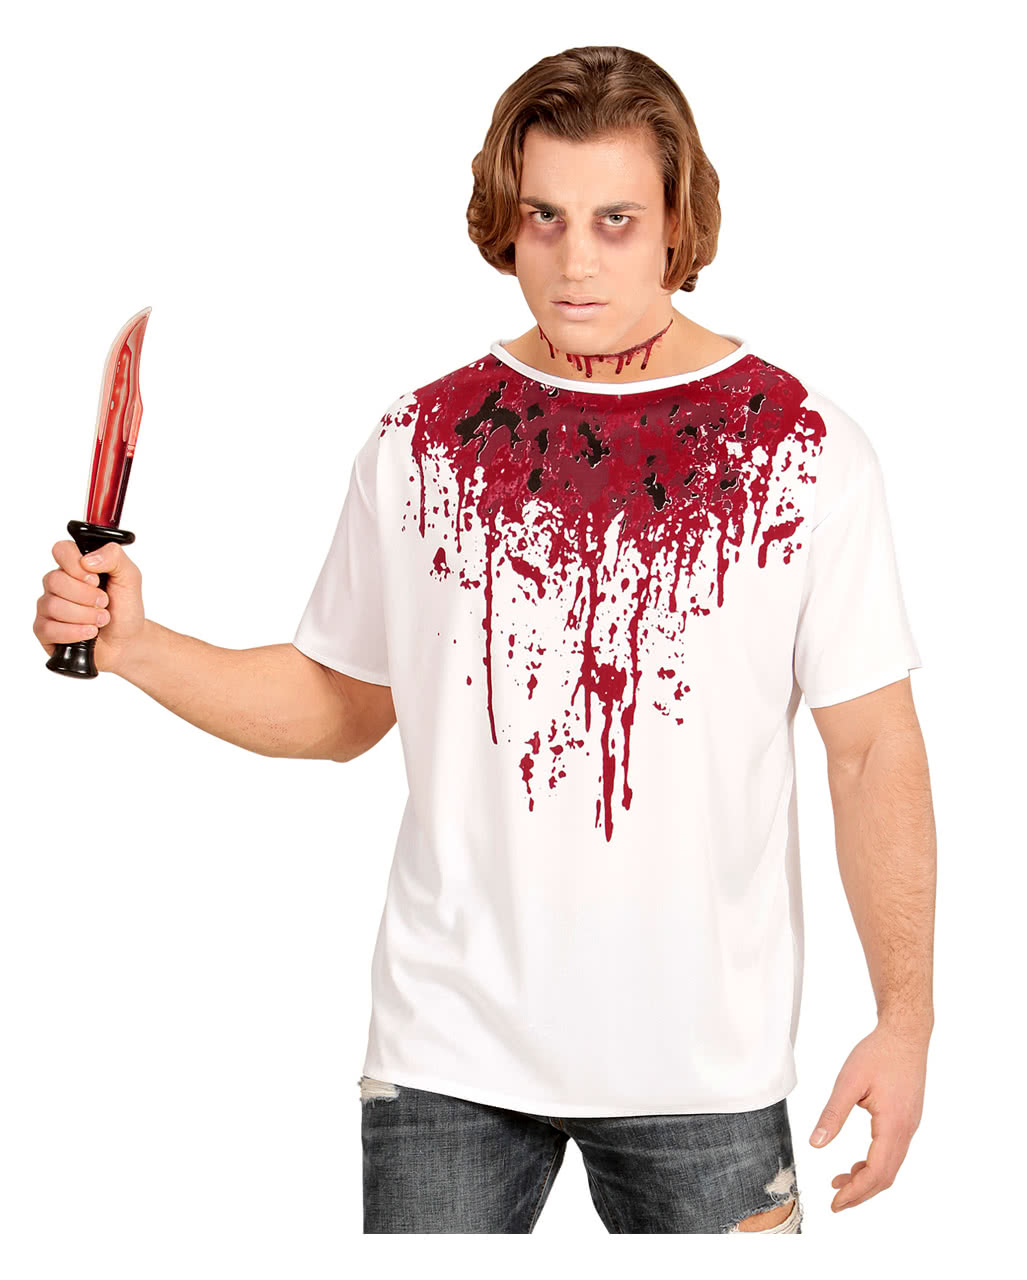 Blutverschmiertes T-Shirt für Halloween & Horror Partys XL von Horror-Shop.com